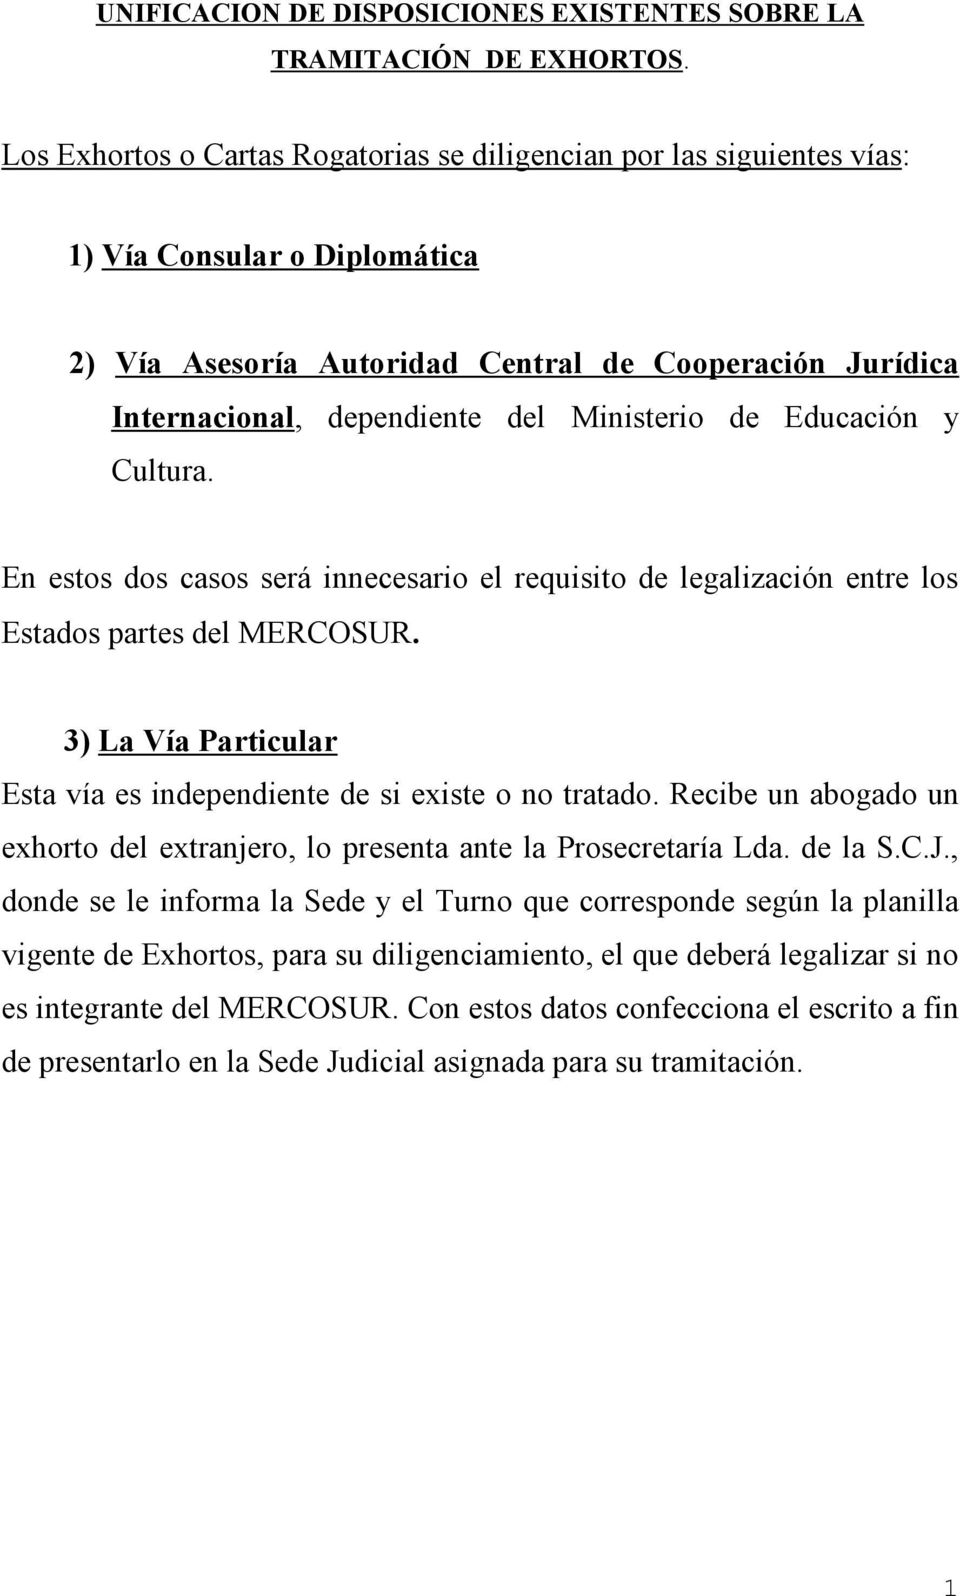 Ministerio de Educación y Cultura. En estos dos casos será innecesario el requisito de legalización entre los Estados partes del MERCOSUR.